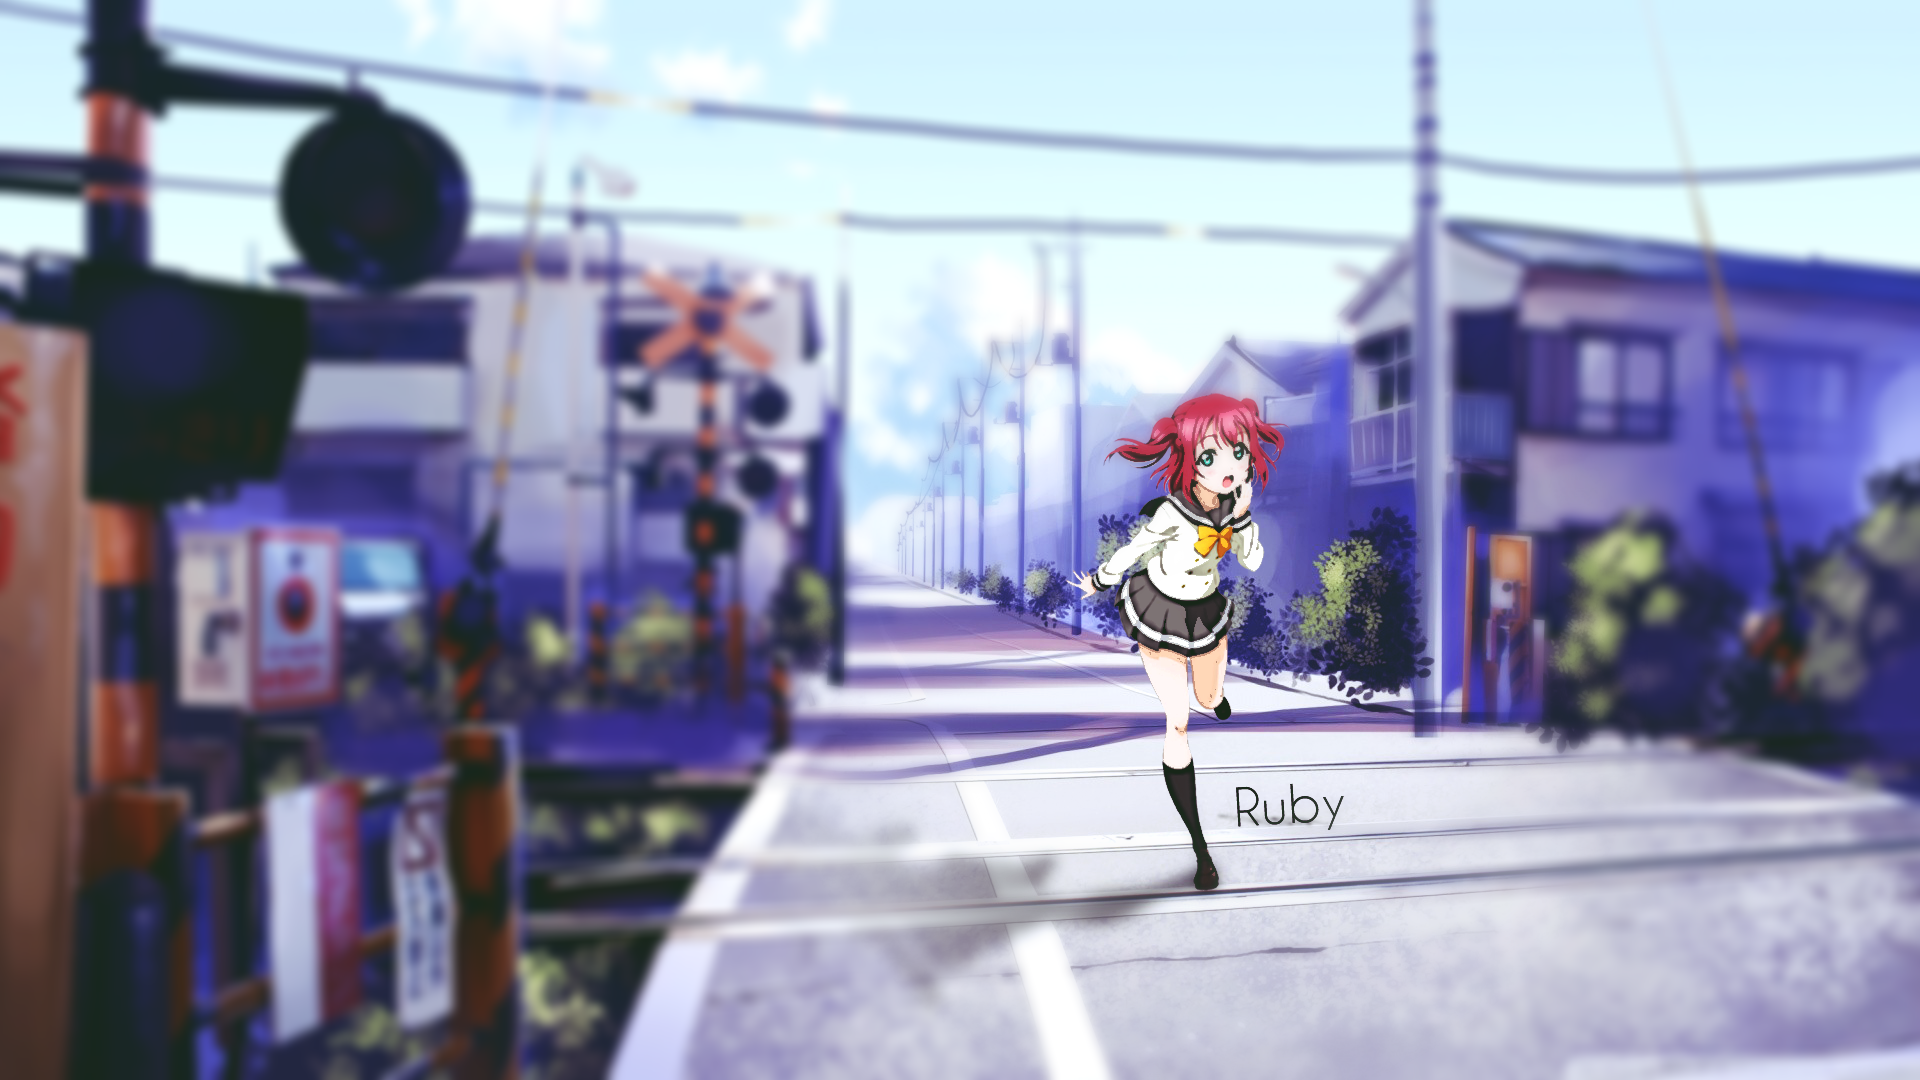 Anime 1920x1080 Love Live! Kurosawa Ruby anime girls urban miniskirt red eyes women outdoors street skirt socks running open mouth